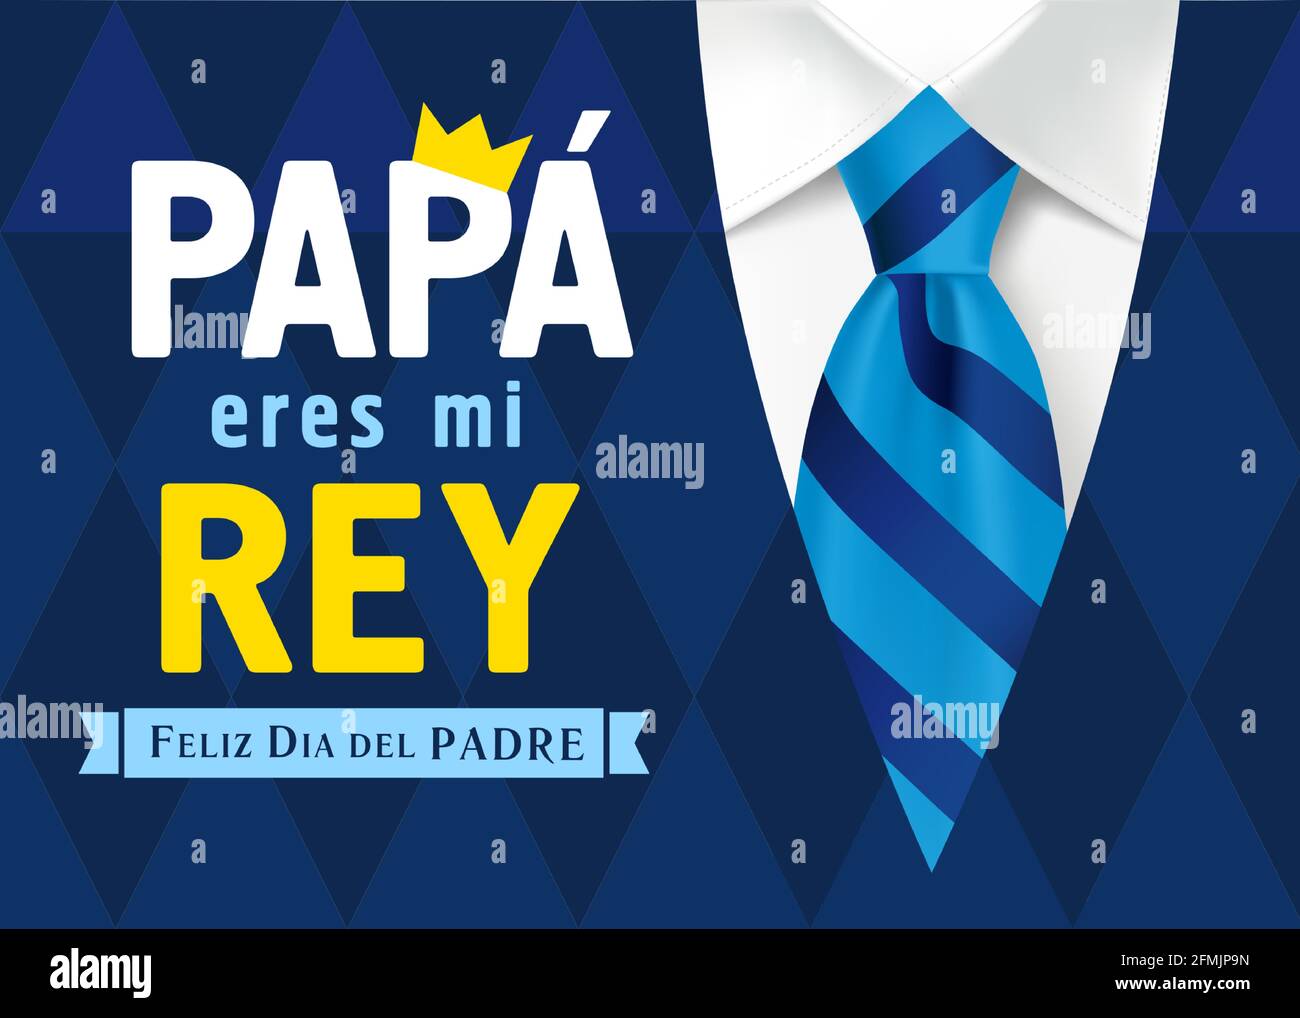 Papa eres mi Rey y Feliz dia del Padre letras en español, traducir - Papá eres  mi rey, Feliz Día de los Padres. Ilustración vectorial del día del padre  con texto Imagen